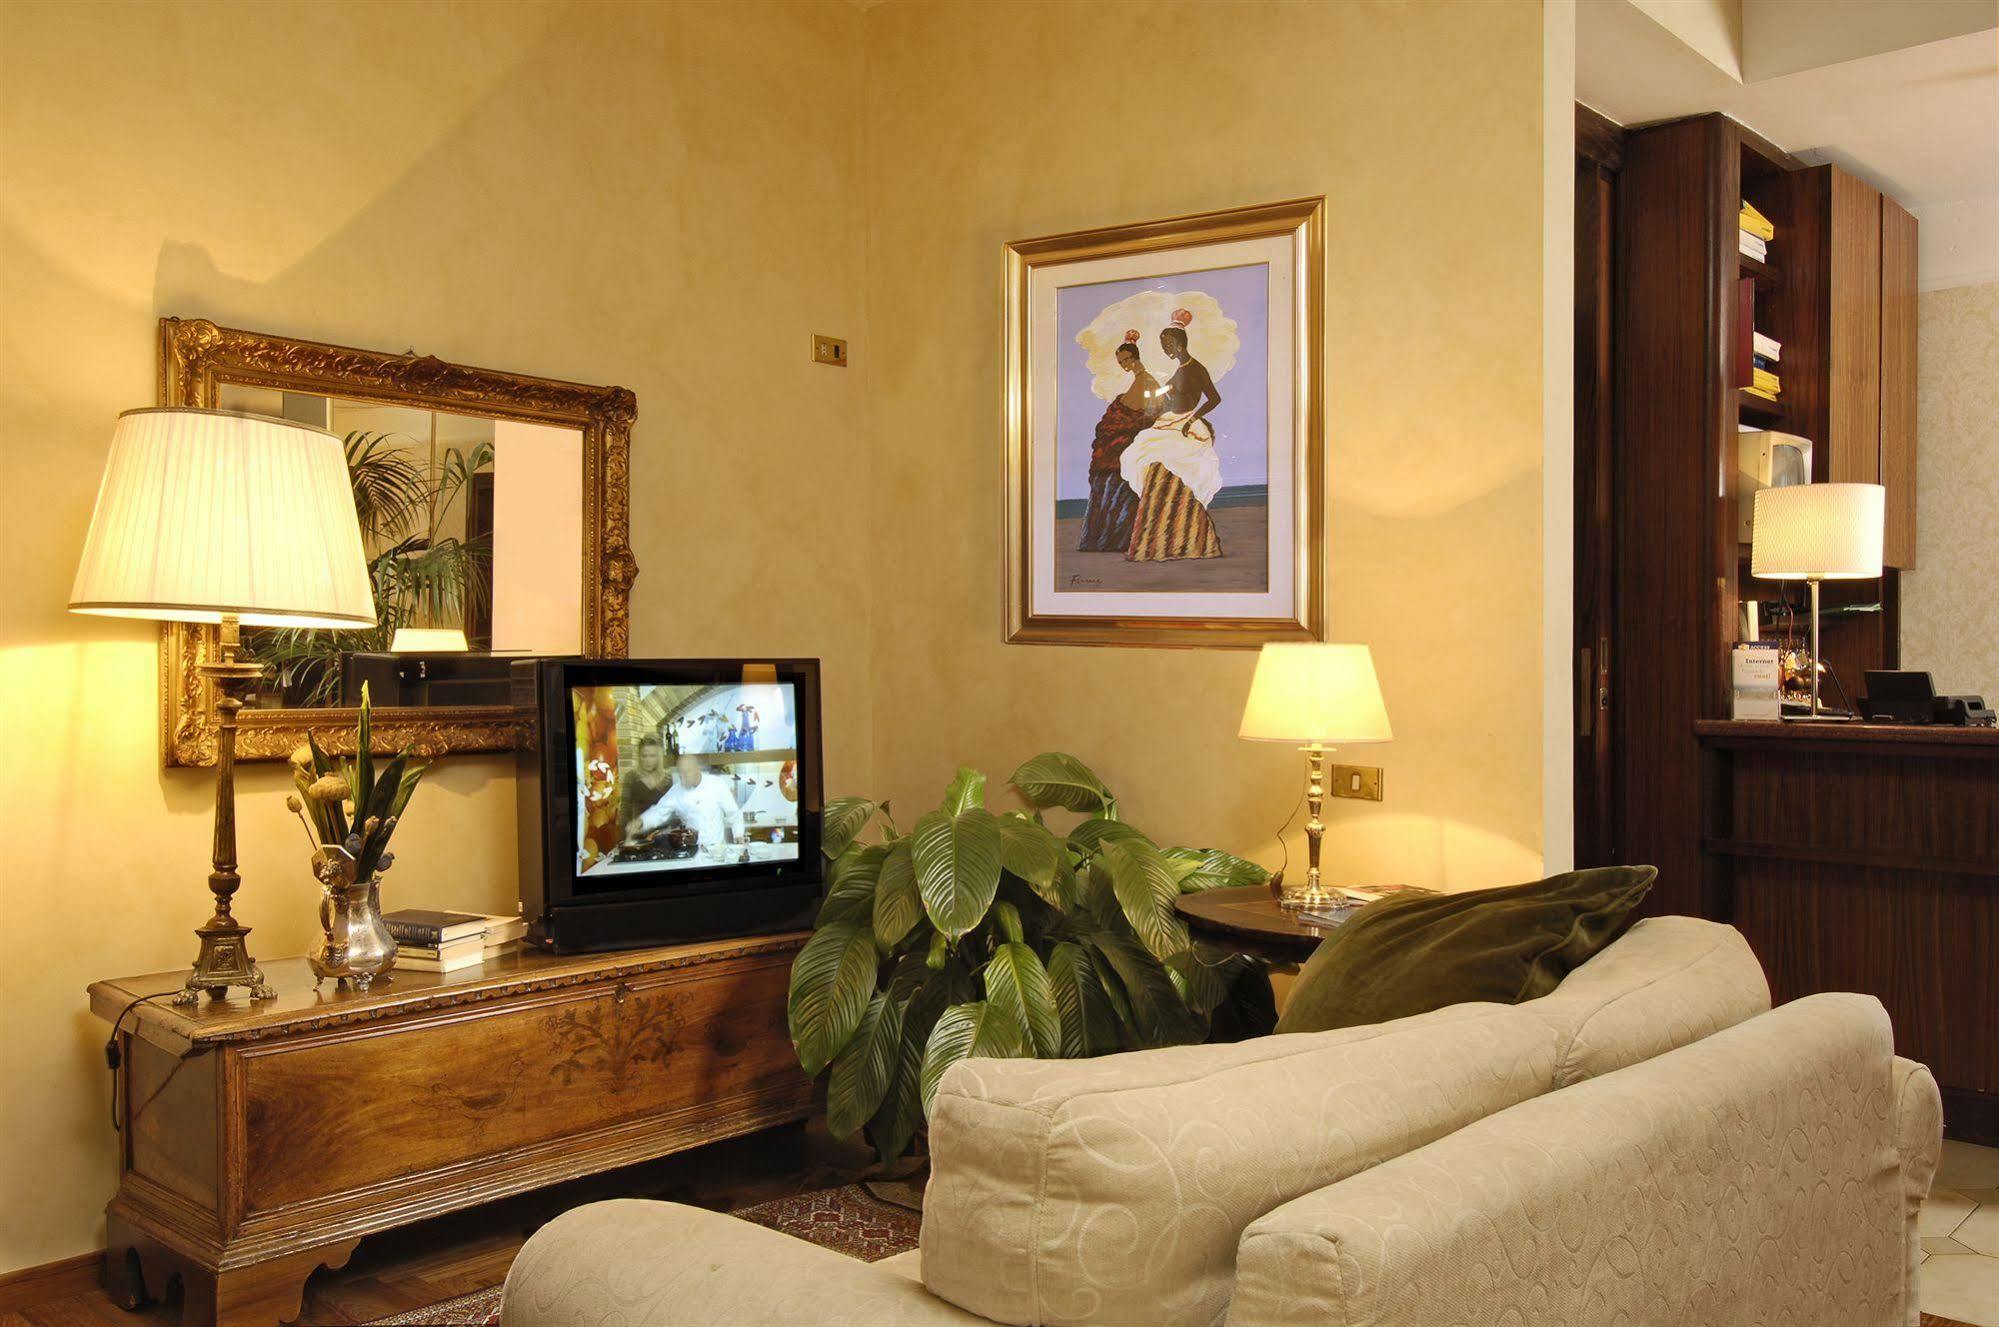 Hotel Cacciani 프라스카티 외부 사진